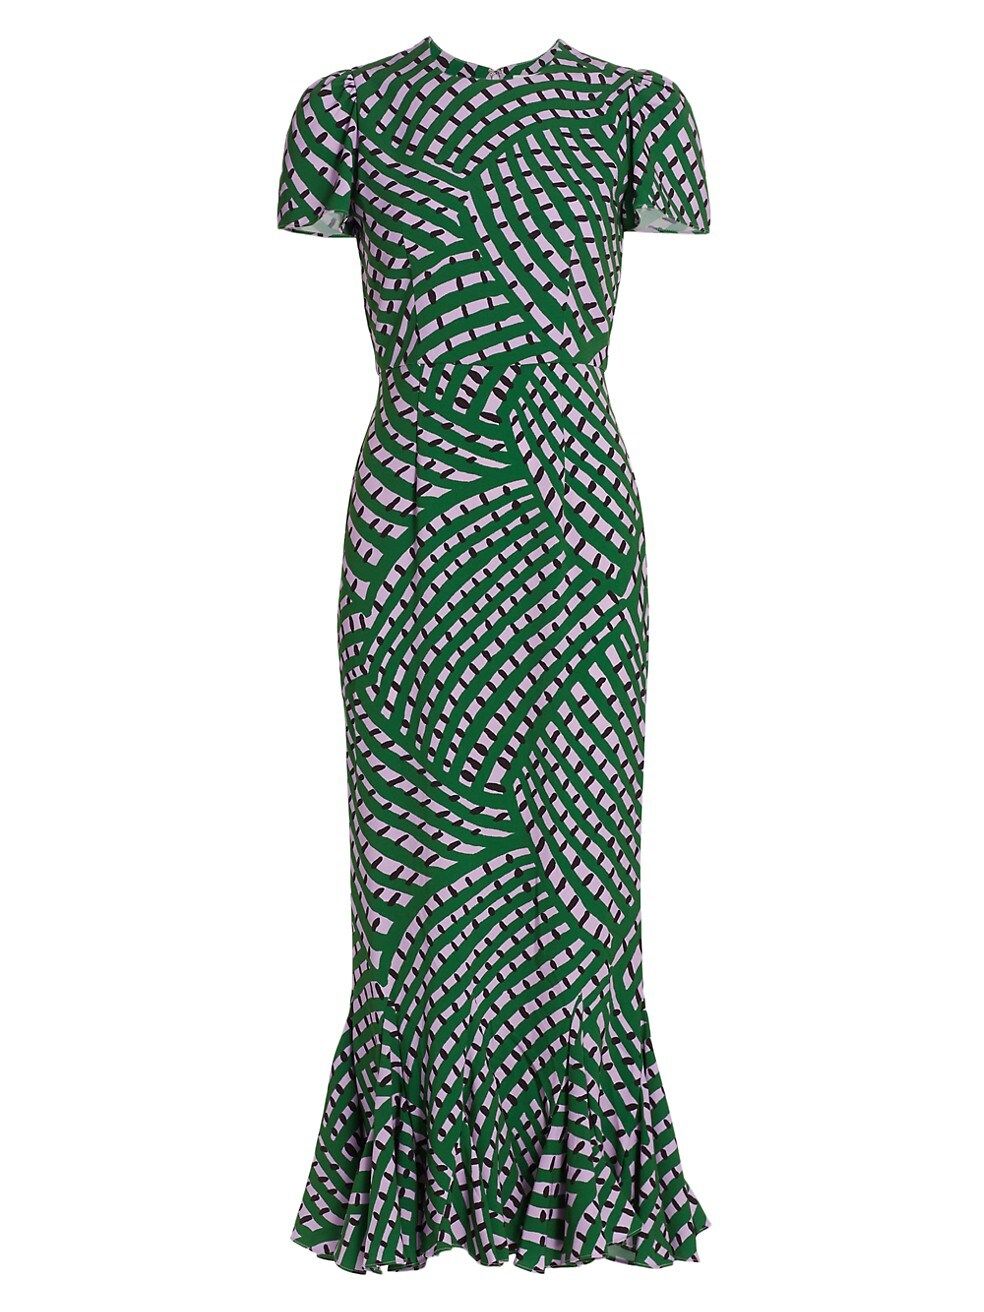 Lulani Printed Dress | Saks Fifth Avenue